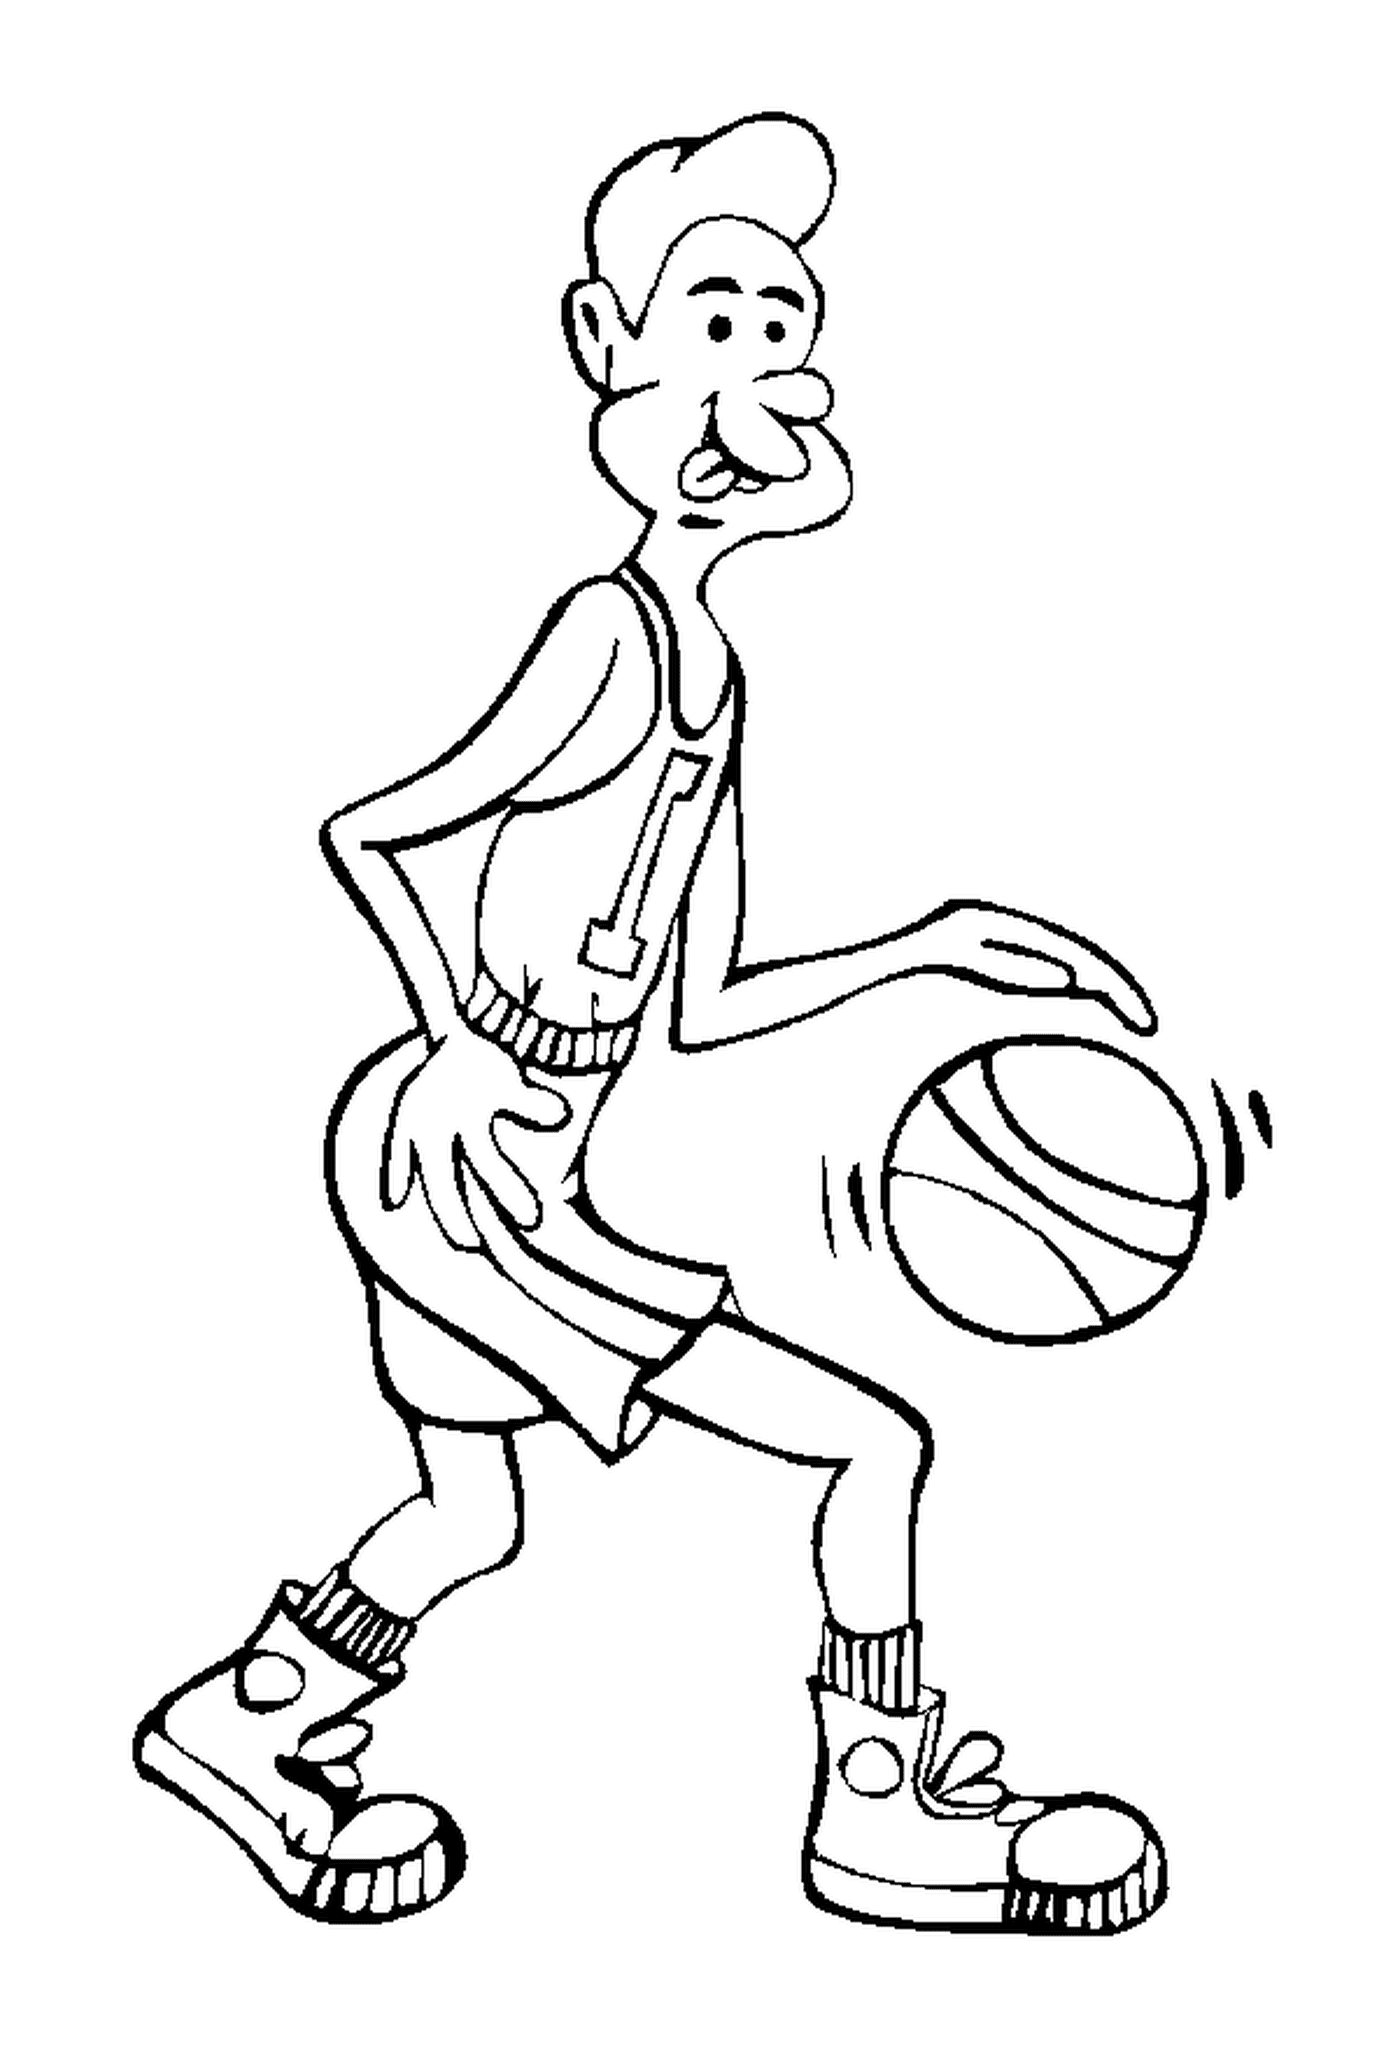  لاعب كرة سلة يحمل الكرة 